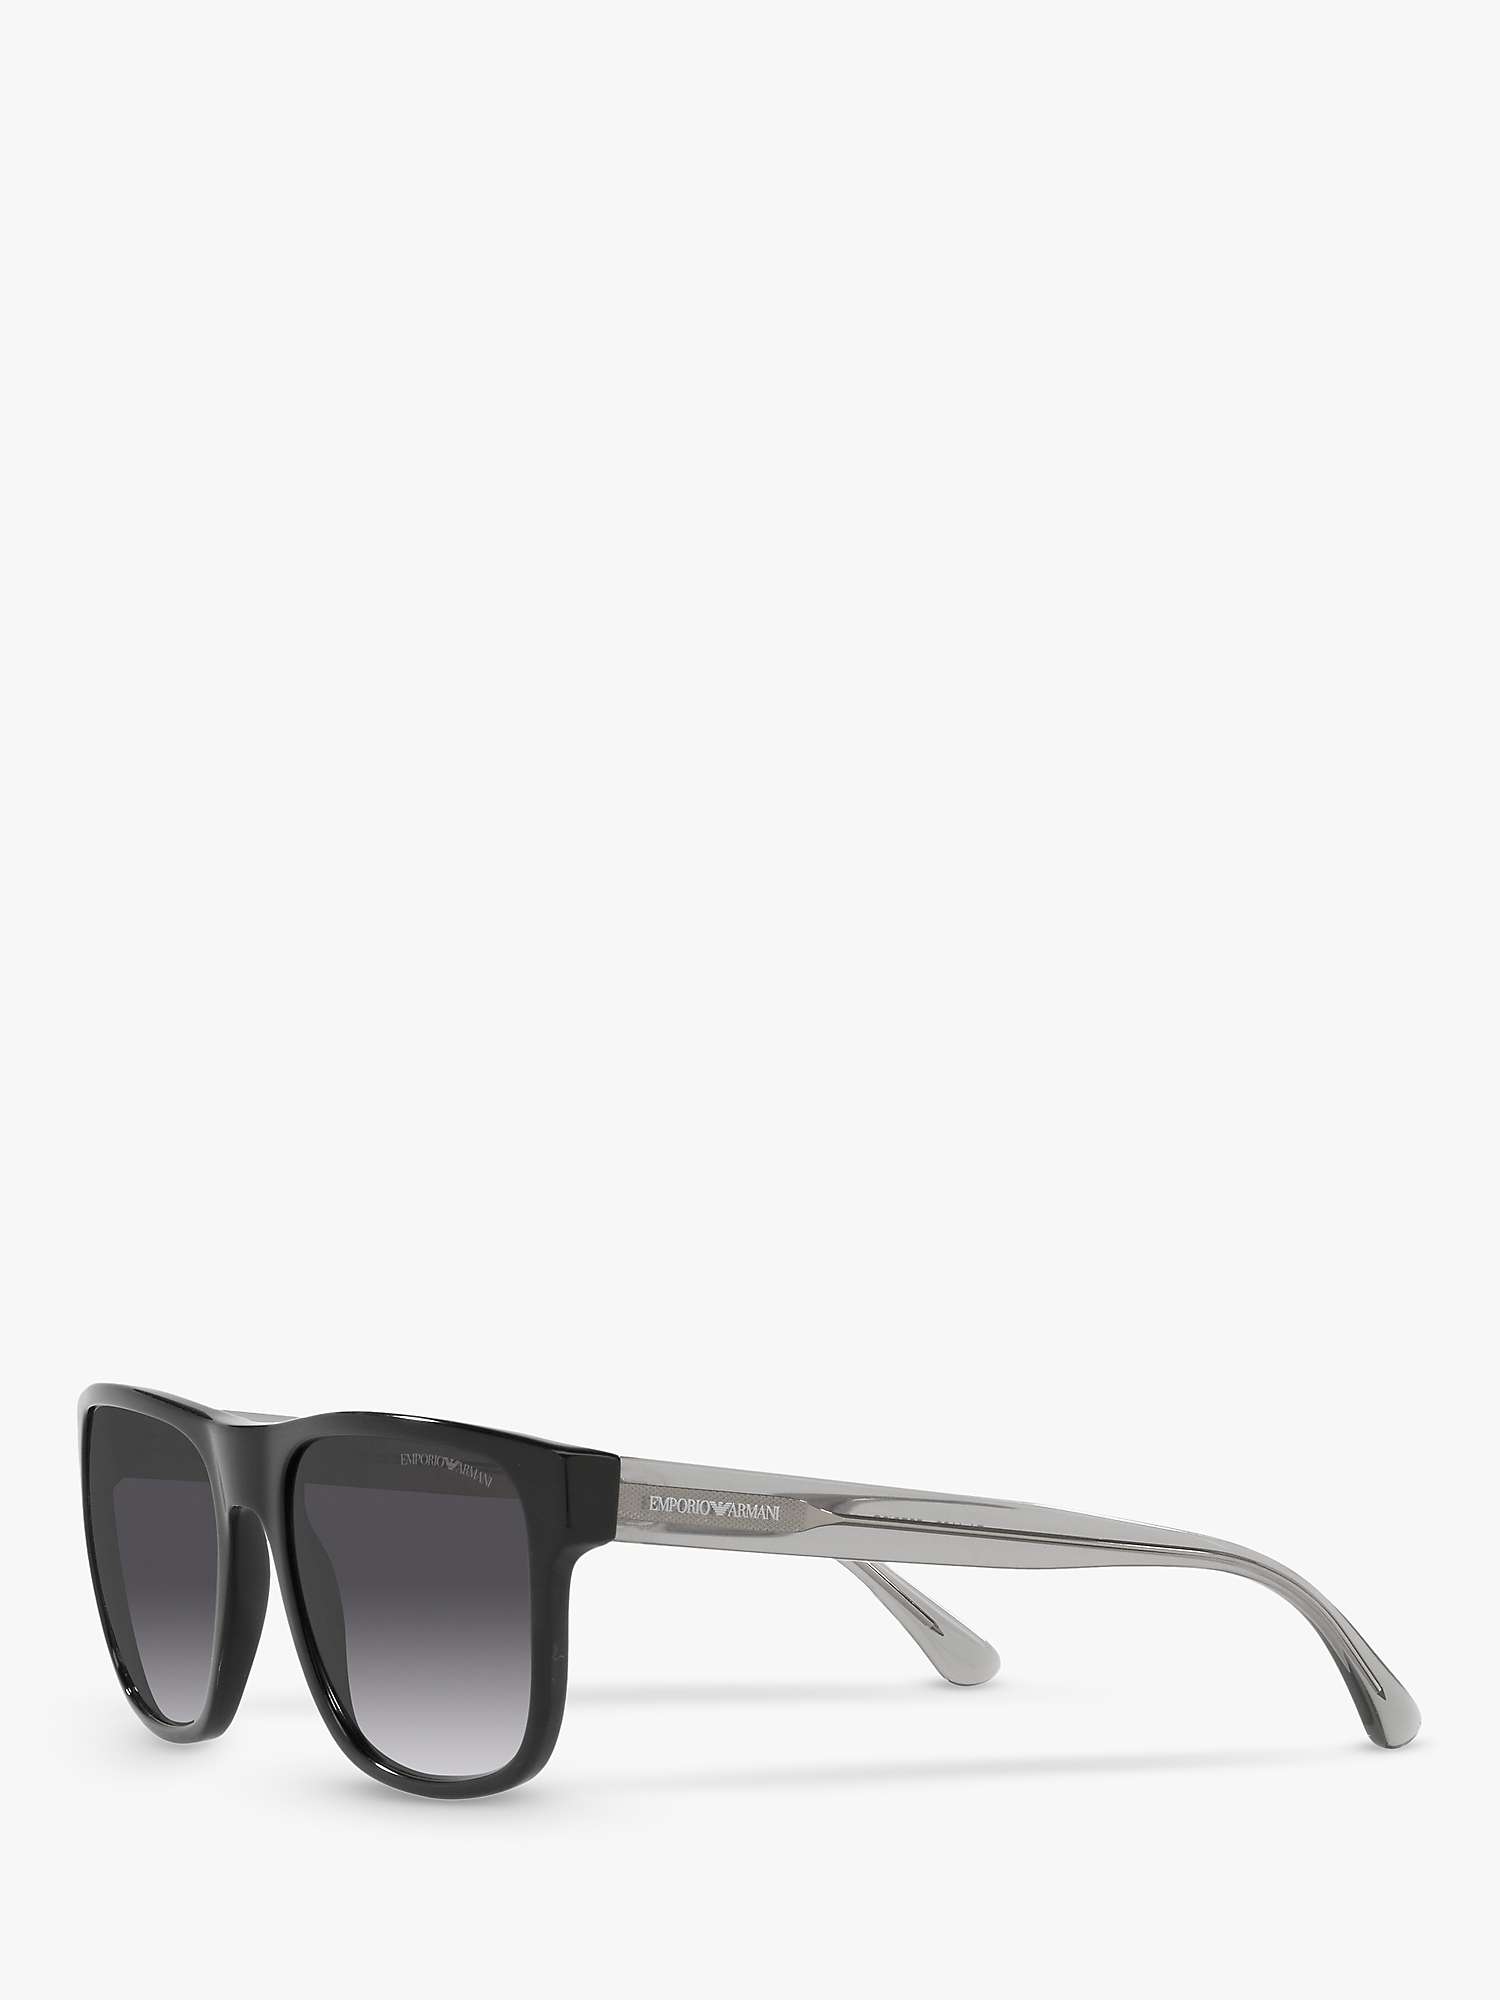 Buy Emporio Armani EA4163 Men's Square Sunglasses, Black/Grey Gradient Online at johnlewis.com